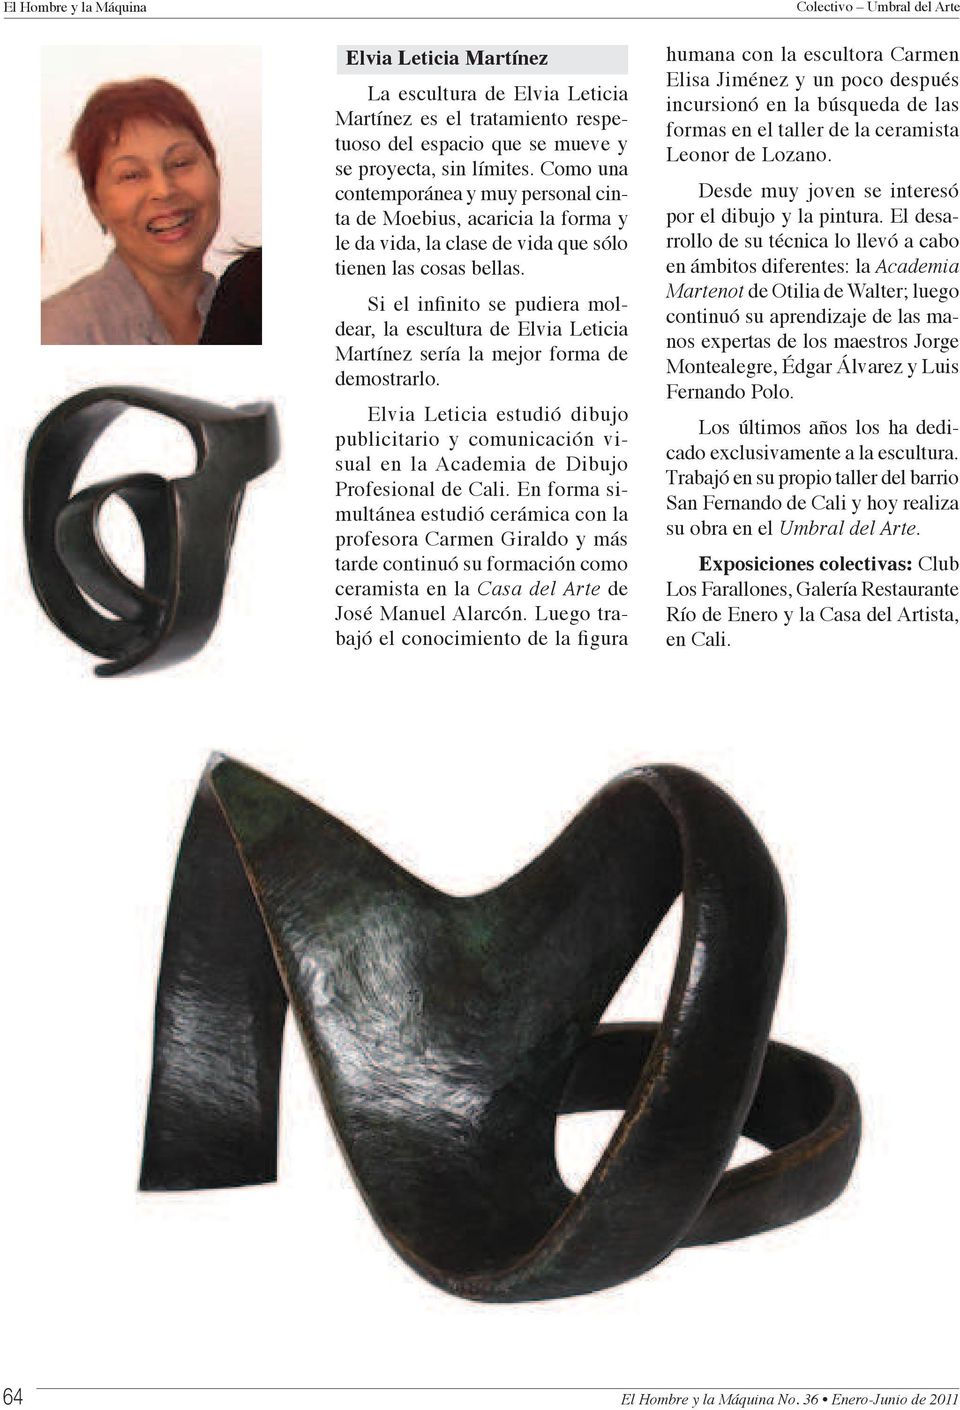 dear, la escultura de Elvia Leticia Martínez sería la mejor forma de demostrarlo. Elvia Leticia estudió dibujo publicitario y comunicación visual en la Academia de Dibujo Profesional de Cali.